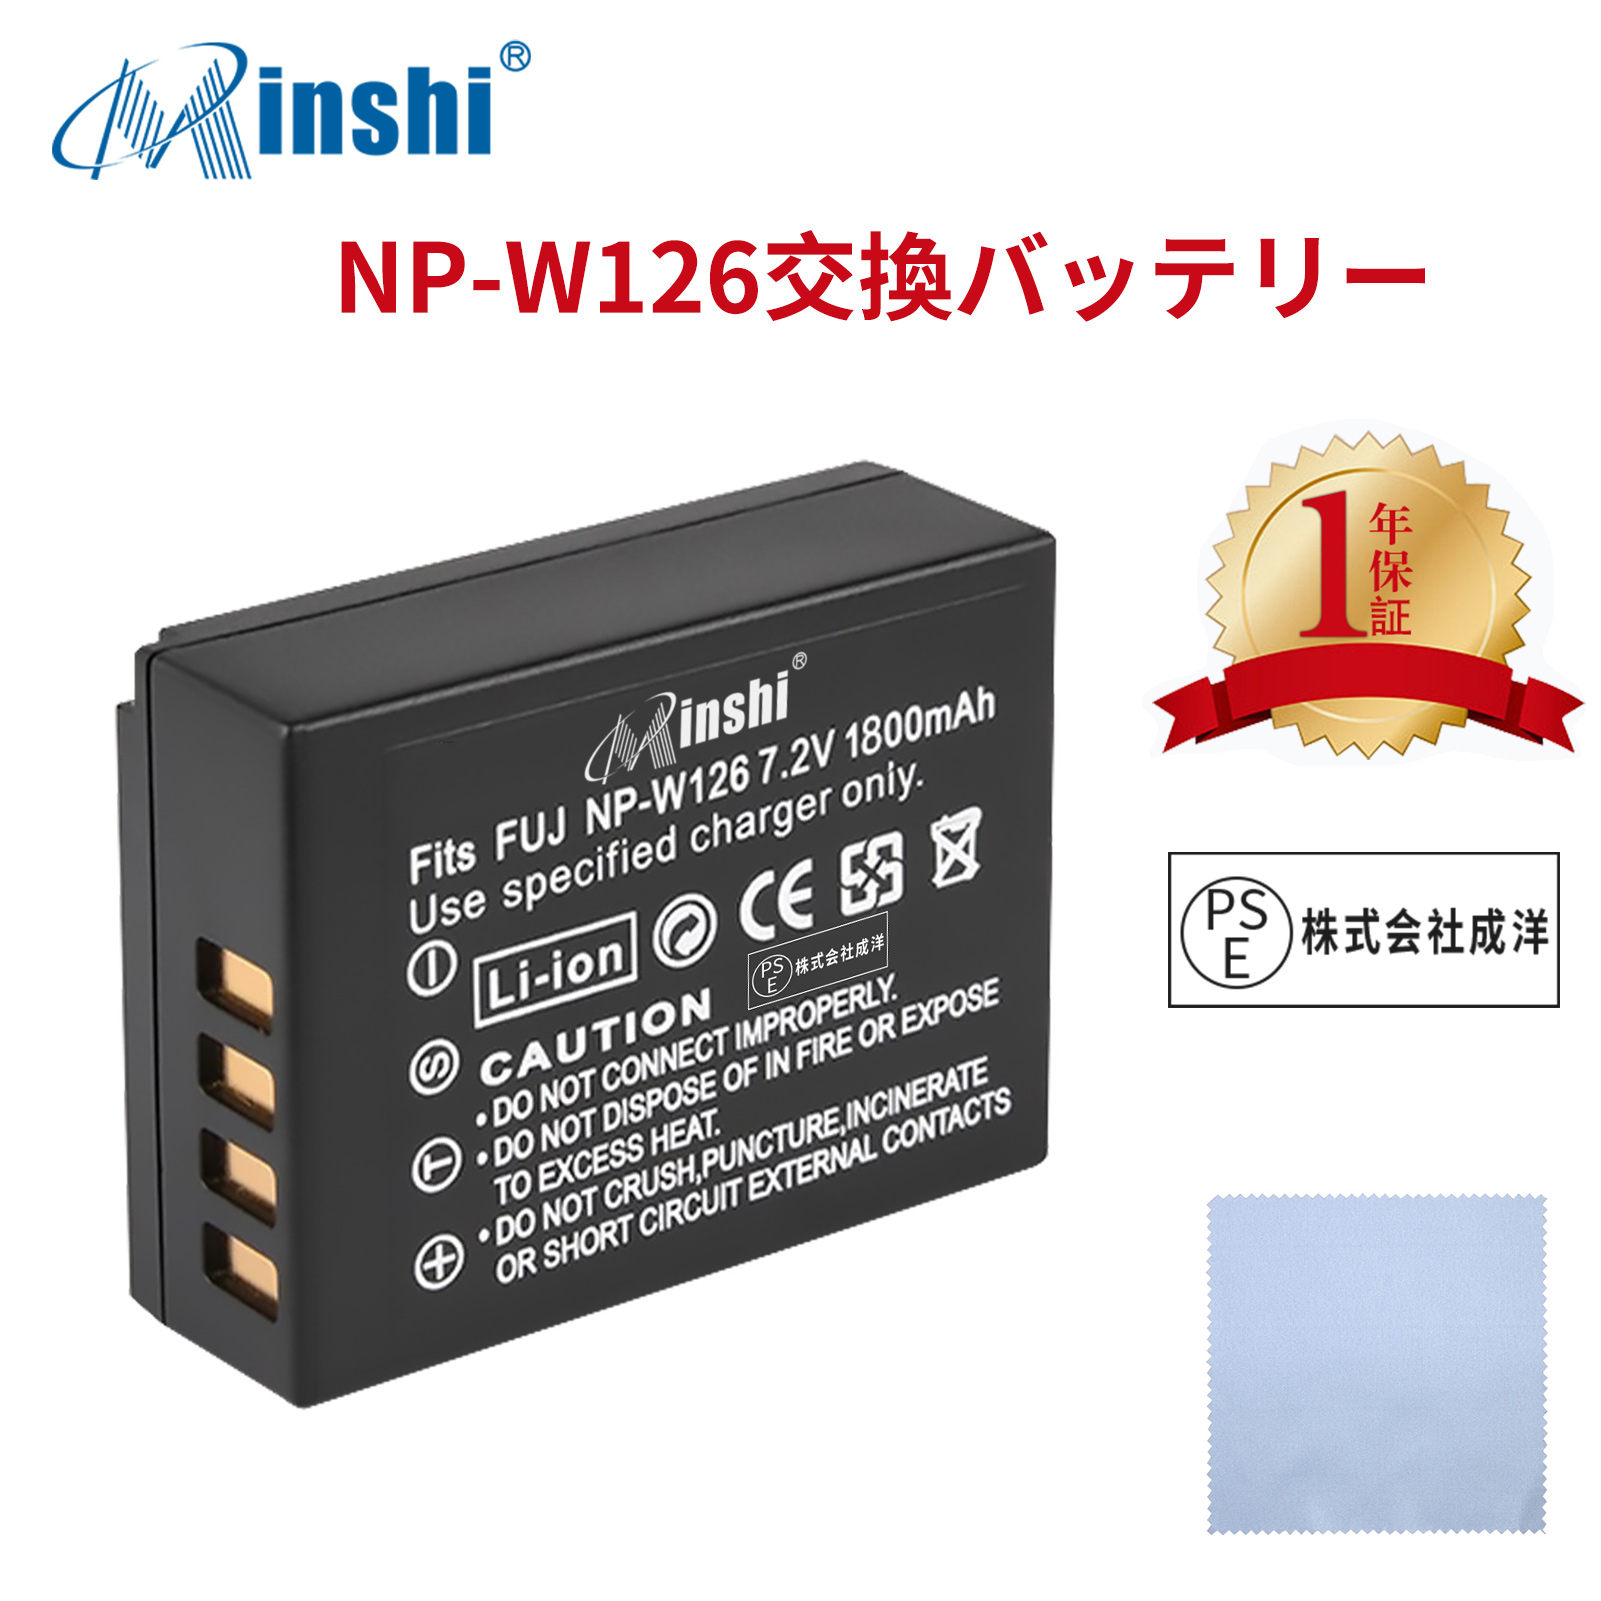 【清潔布ー付】minshi FUJIFILM X100F【1800mAh 7.2V】 高品質NP-W126S NP-W126 互換バッテリーPHB